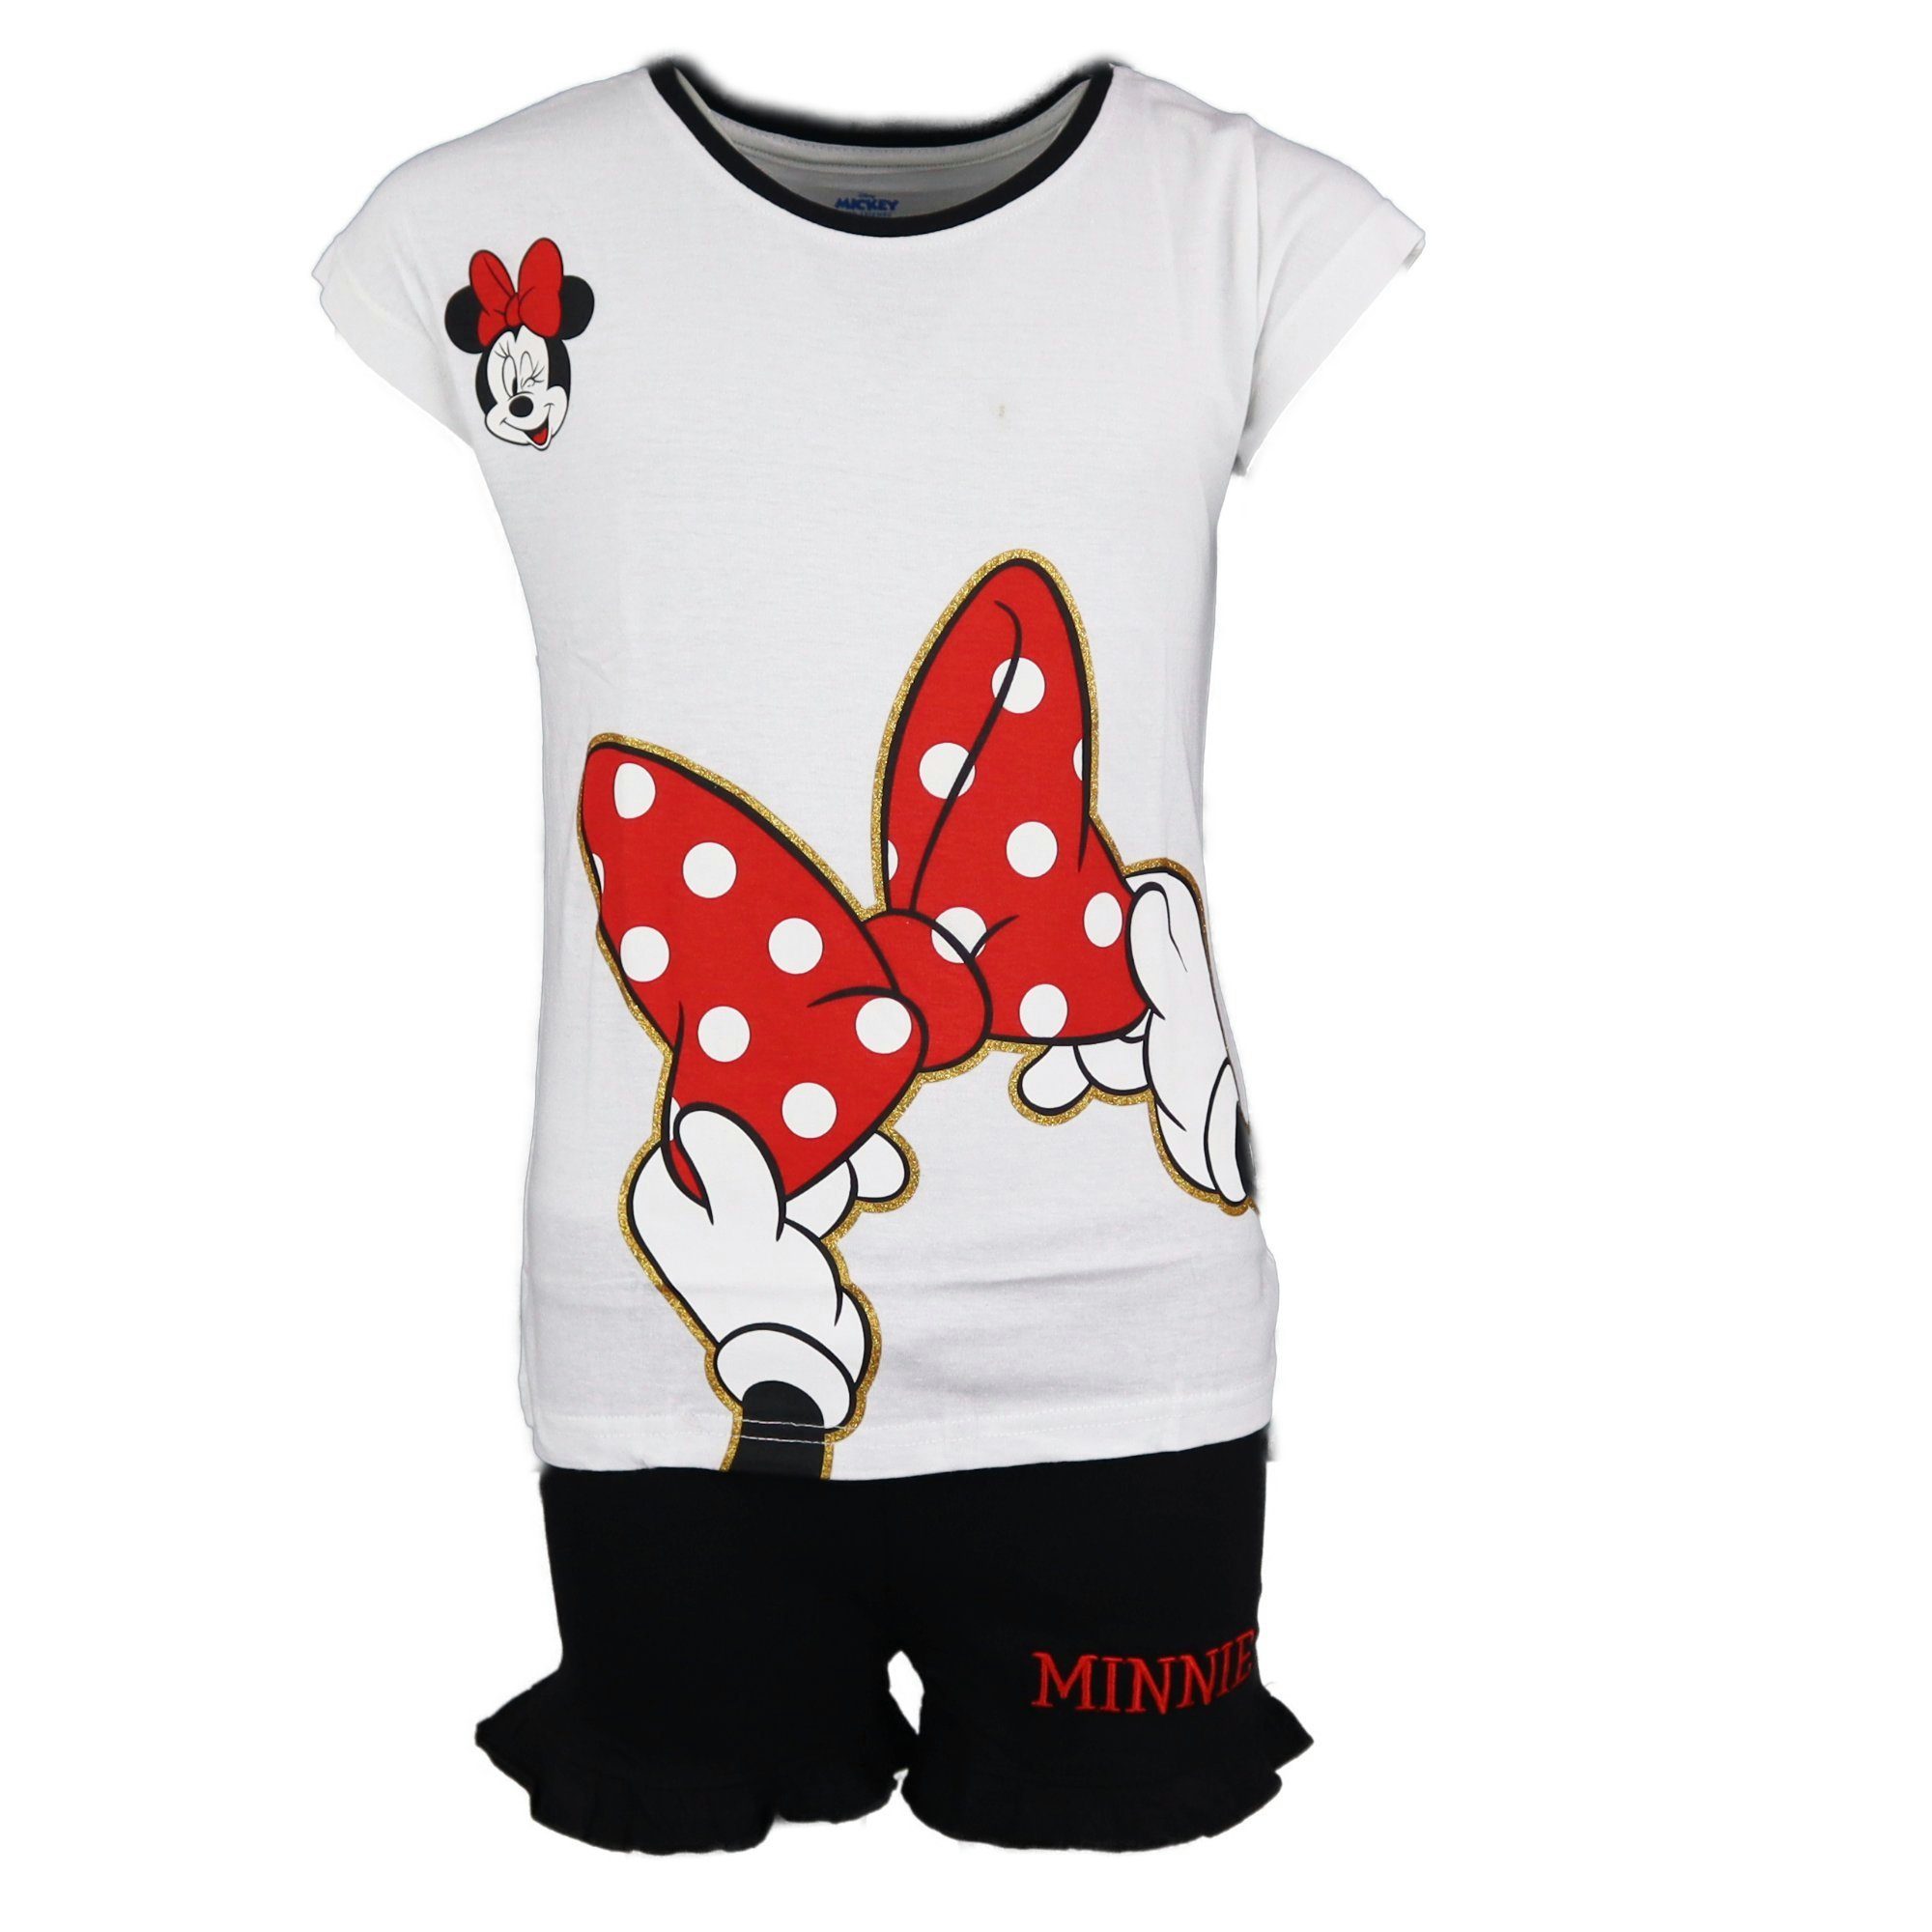 Wäsche/Bademode Nachtwäsche Disney Minnie Mouse Schlafanzug Minnie Maus Mädchen kurzarm Pyjama Gr. 134 bis 164, Baumwolle, Rot o